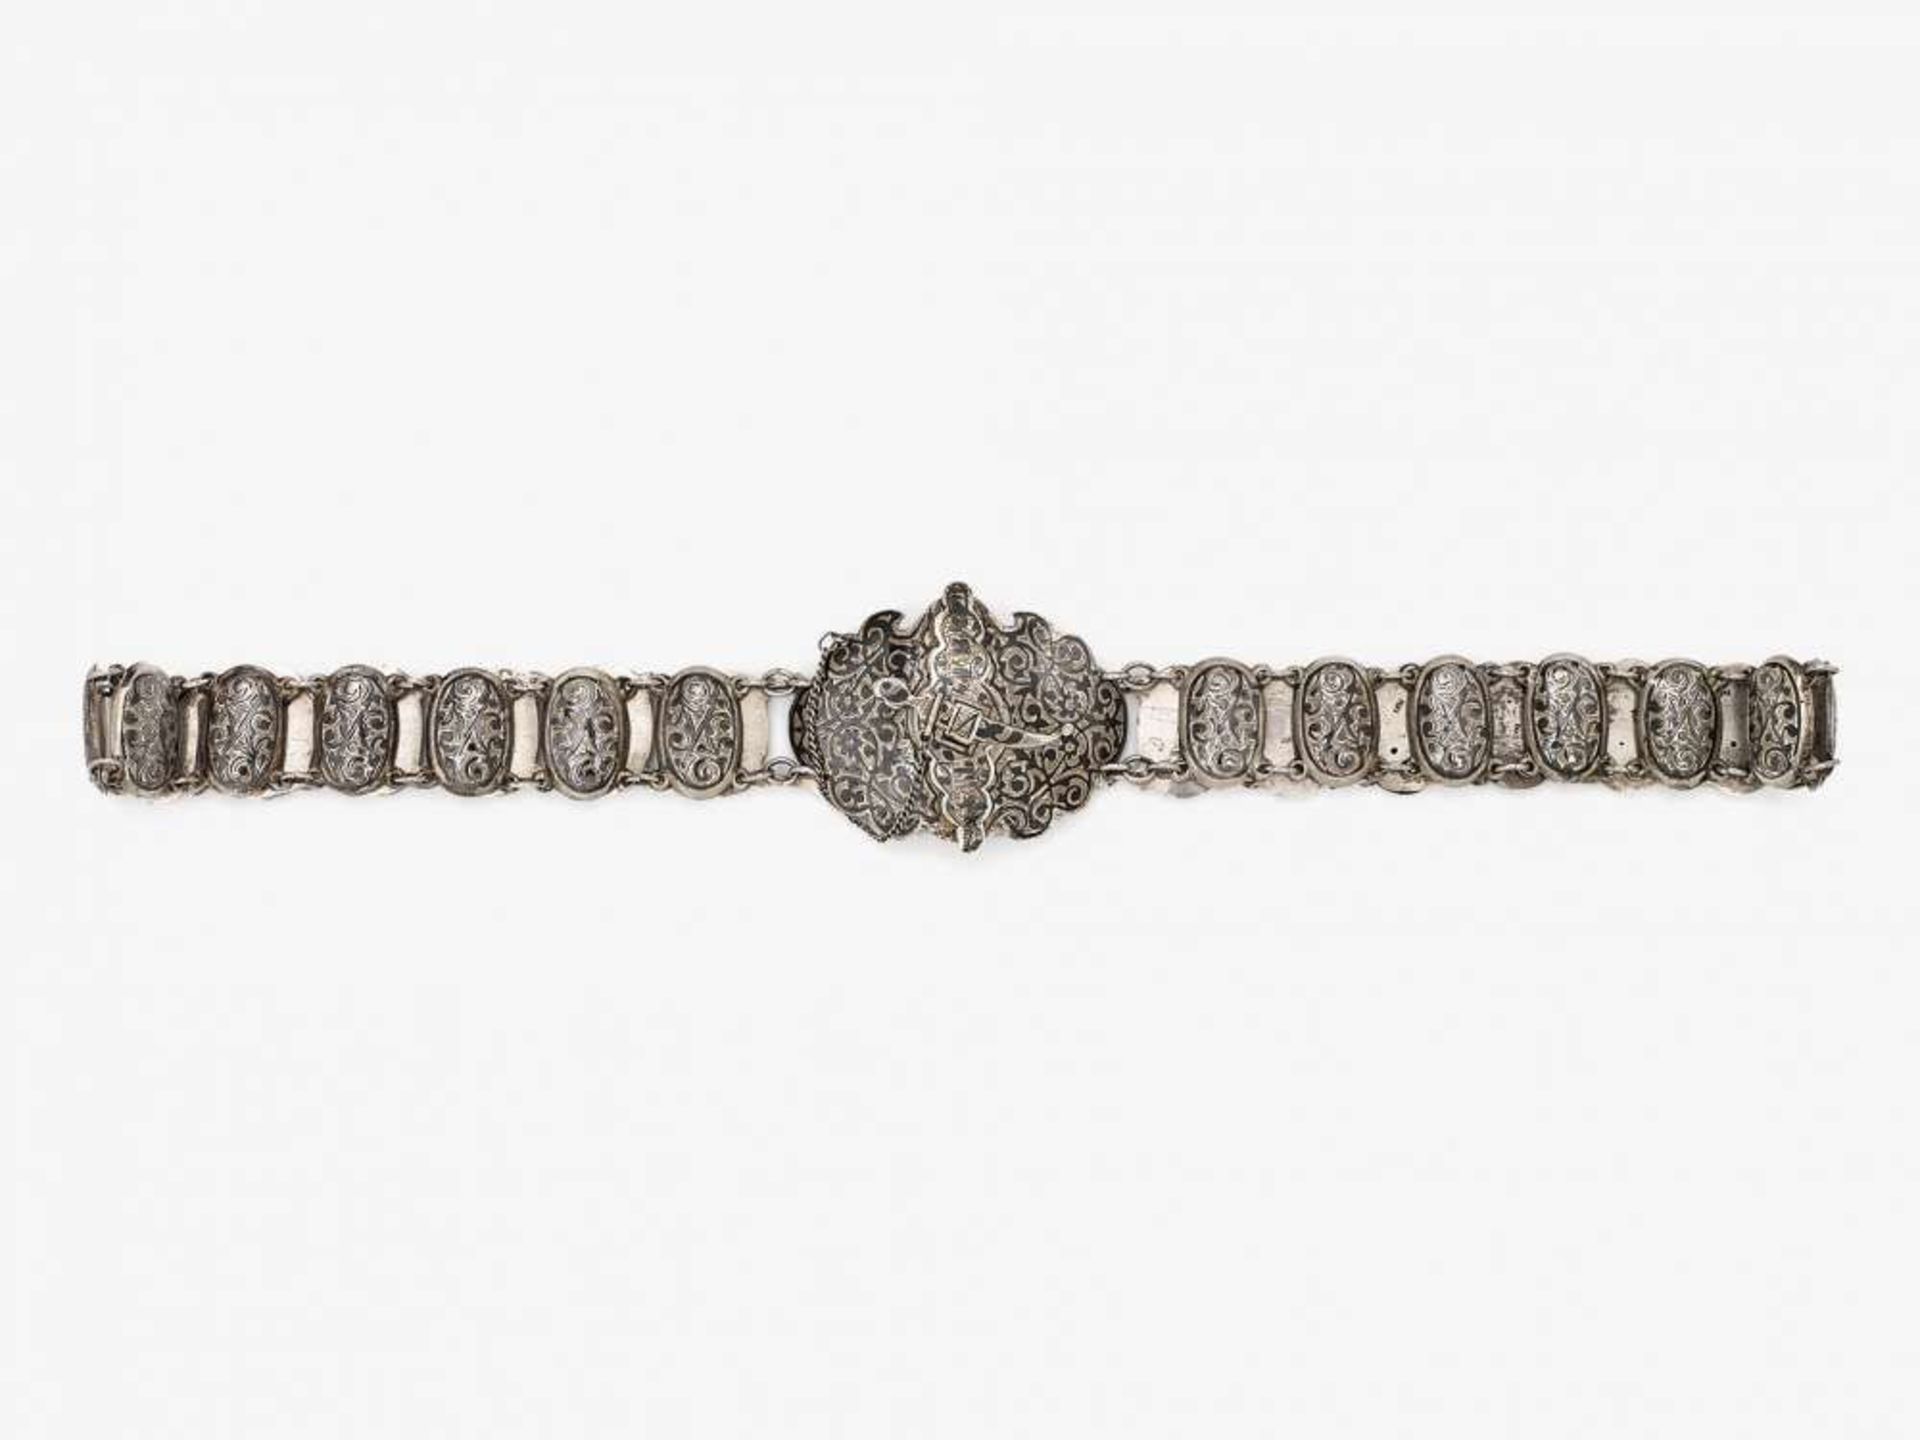 Gürtel Russland, 1896 - 1908   Silber. Mit Ringösen verbundene ovale Glieder mit ornamentalem